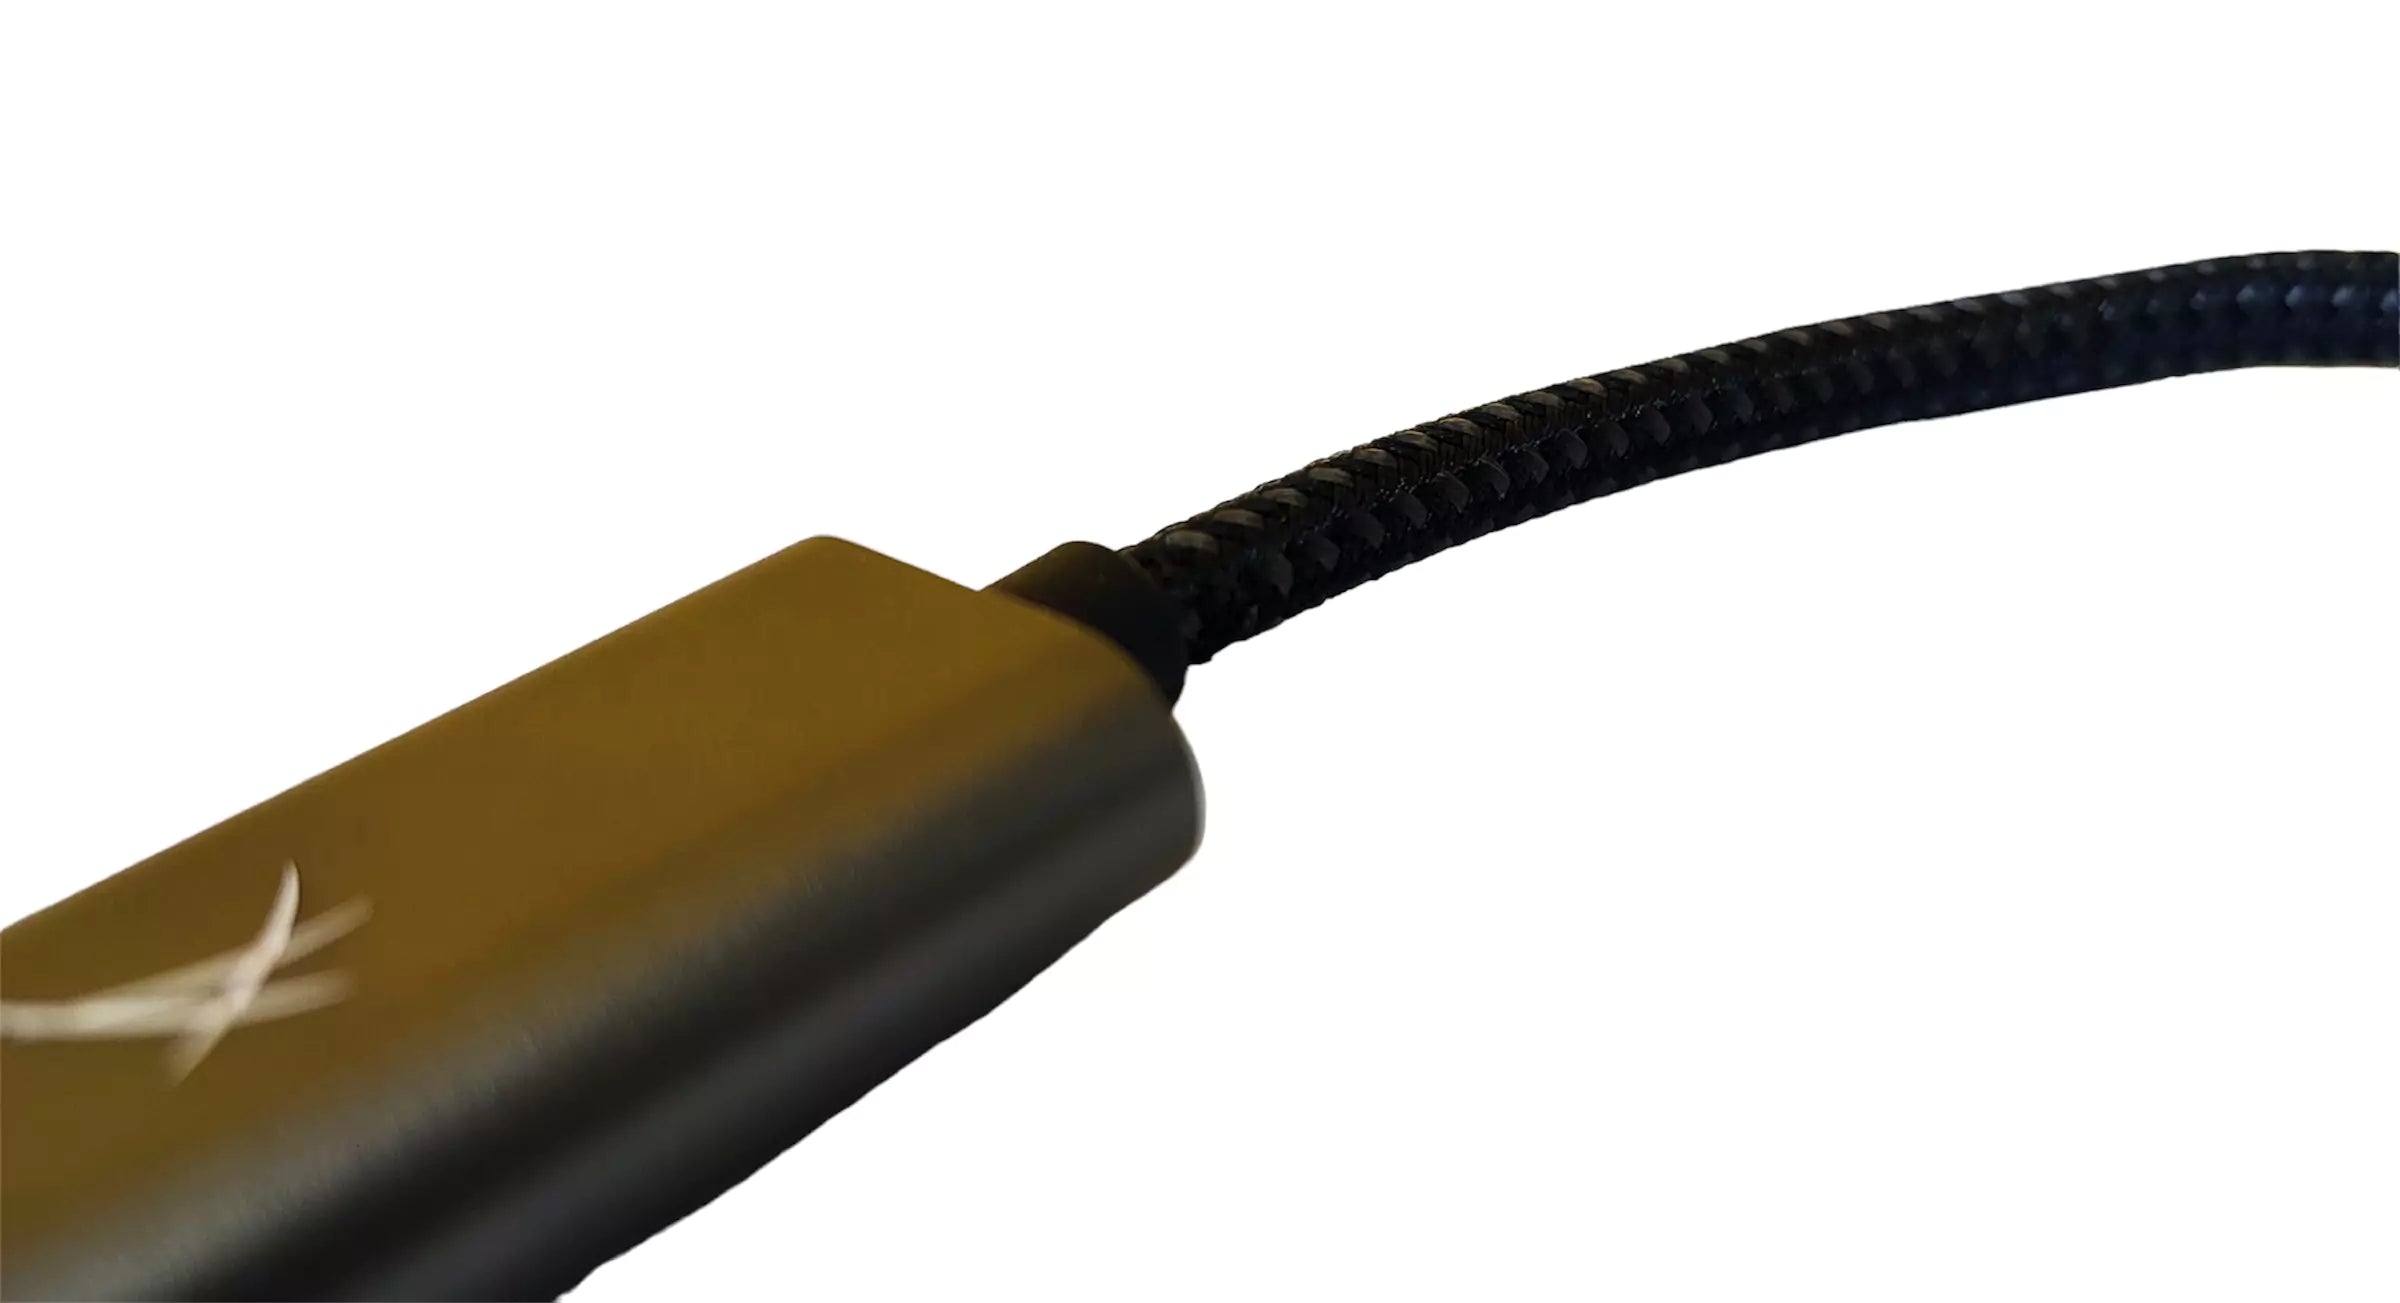 USB-Typ-C-zu-HDMI-Adapter 4K@60Hz ST0824-kompatibel Thunderbolt 3 zu HDMI kompaktes Design, perfekt für PC-Projektoren und Smartphones